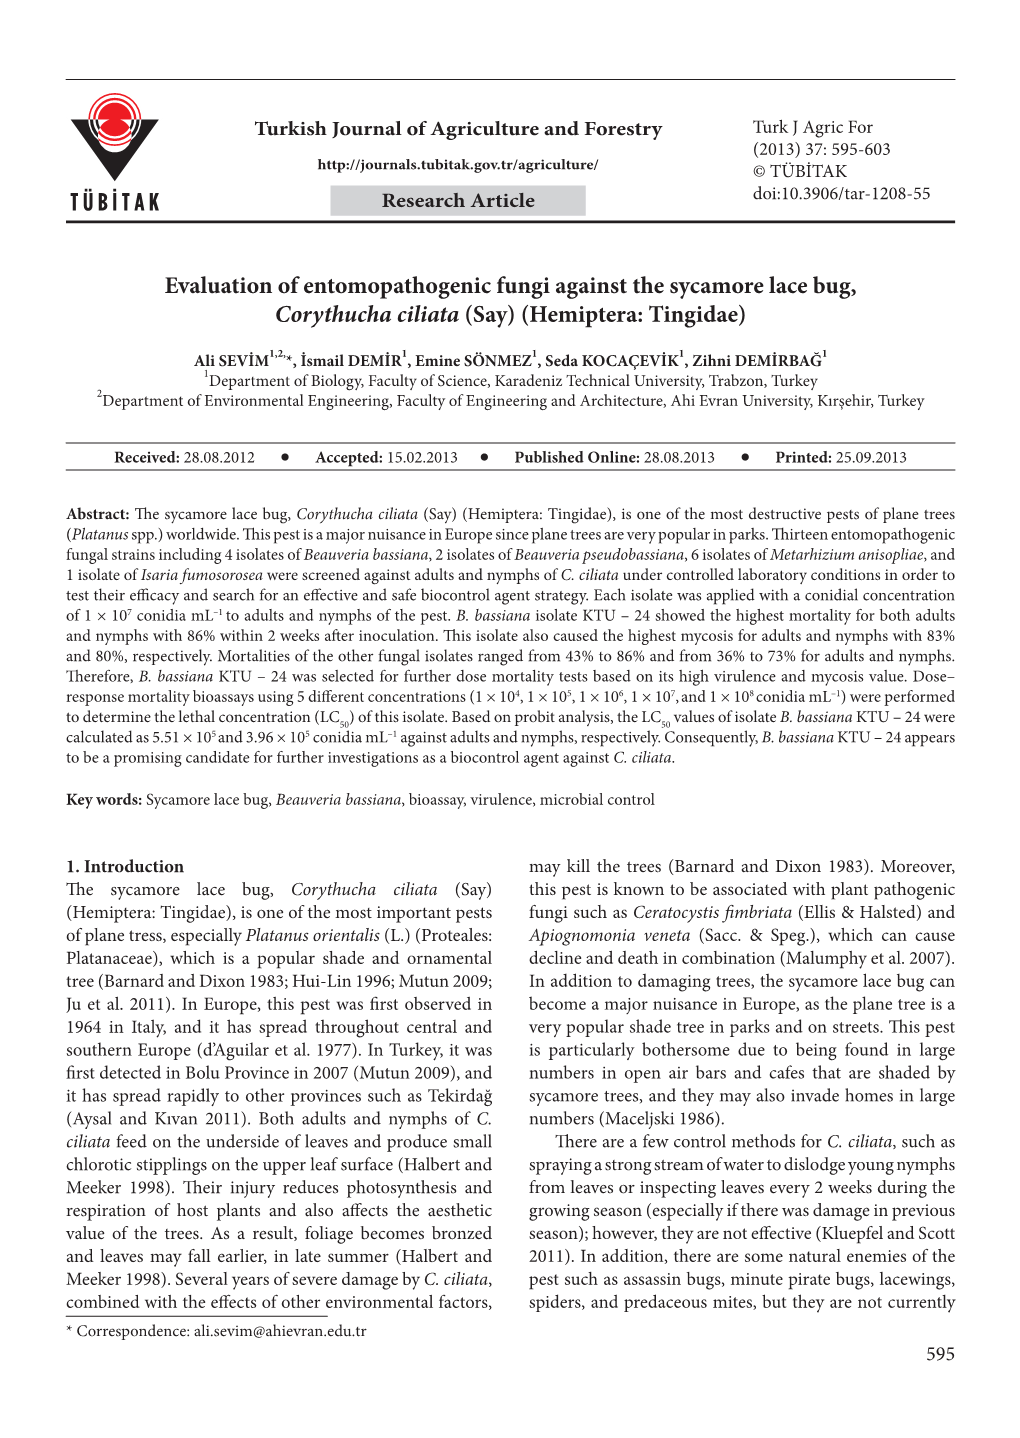 Evaluation of Entomopathogenic Fungi Against the Sycamore Lace Bug, Corythucha Ciliata (Say) (Hemiptera: Tingidae)